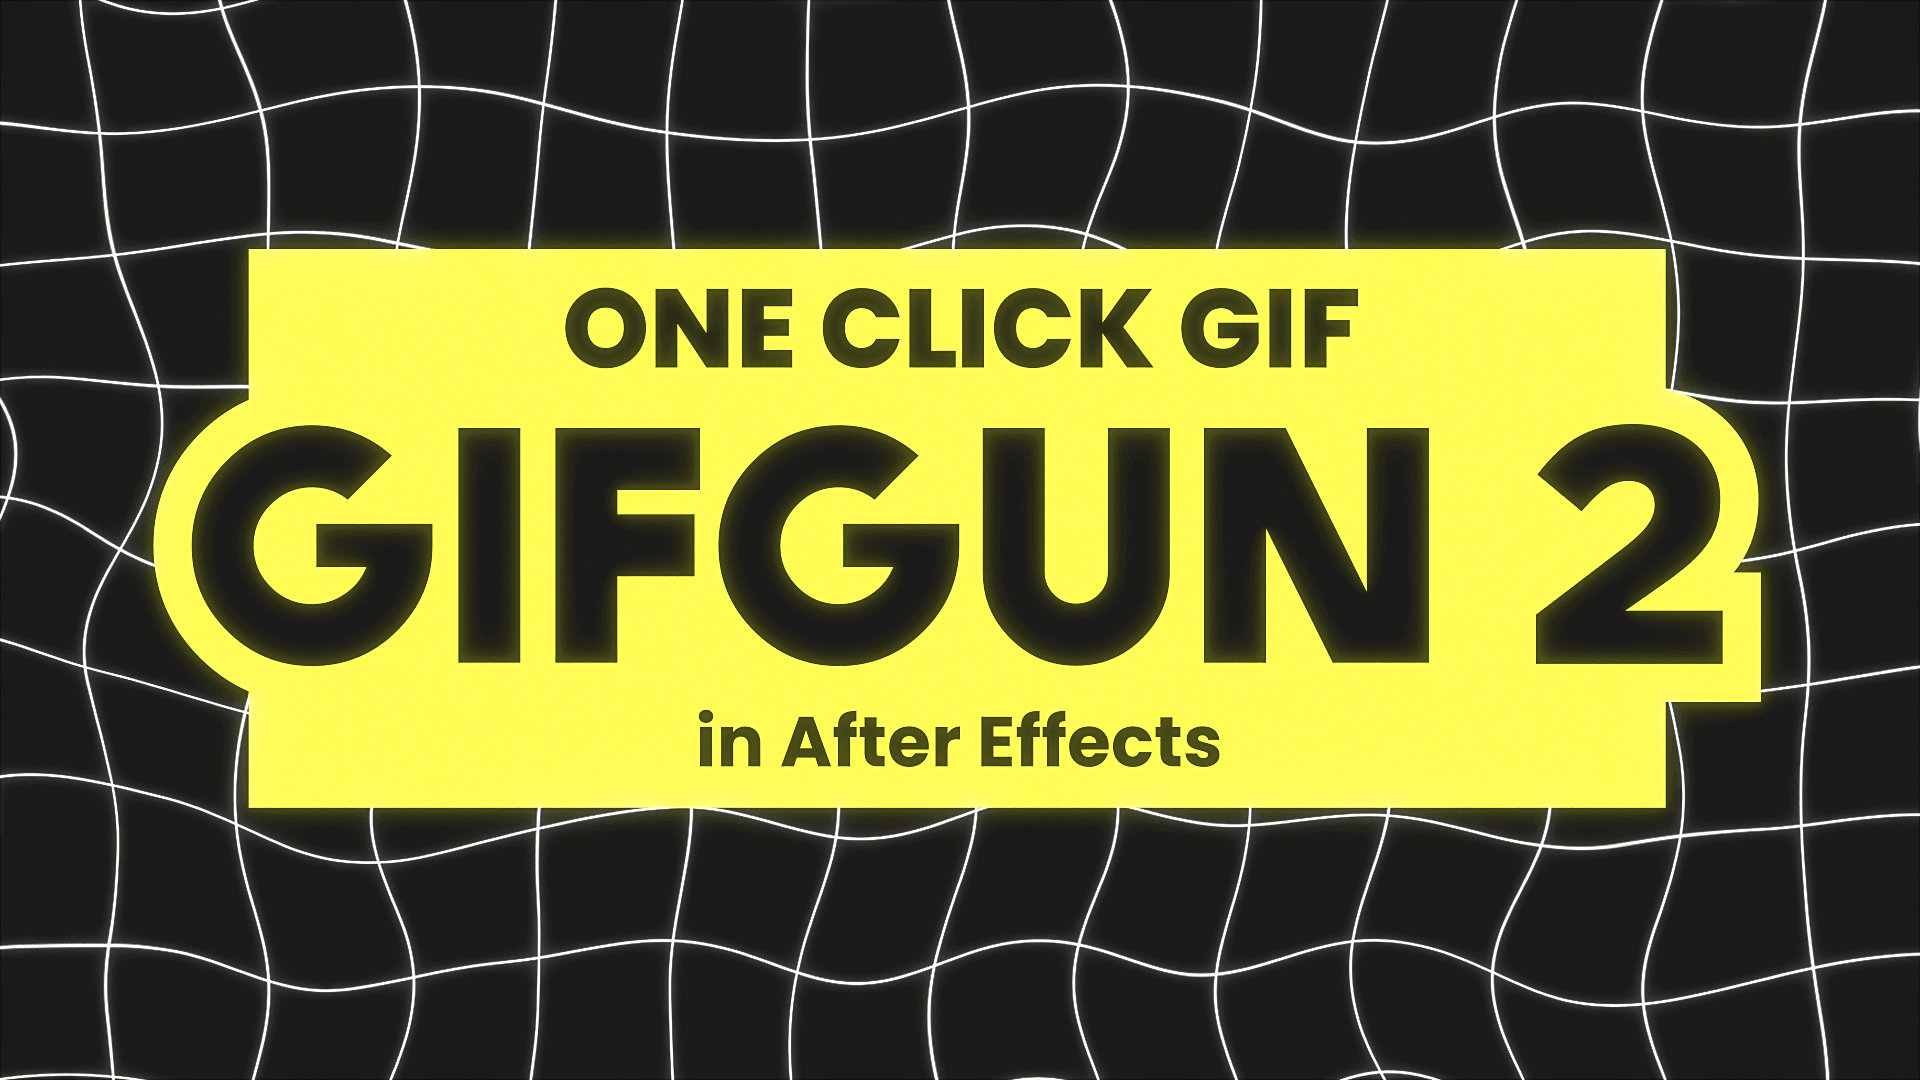 Como criar Gifs com After Effects e Photoshop 